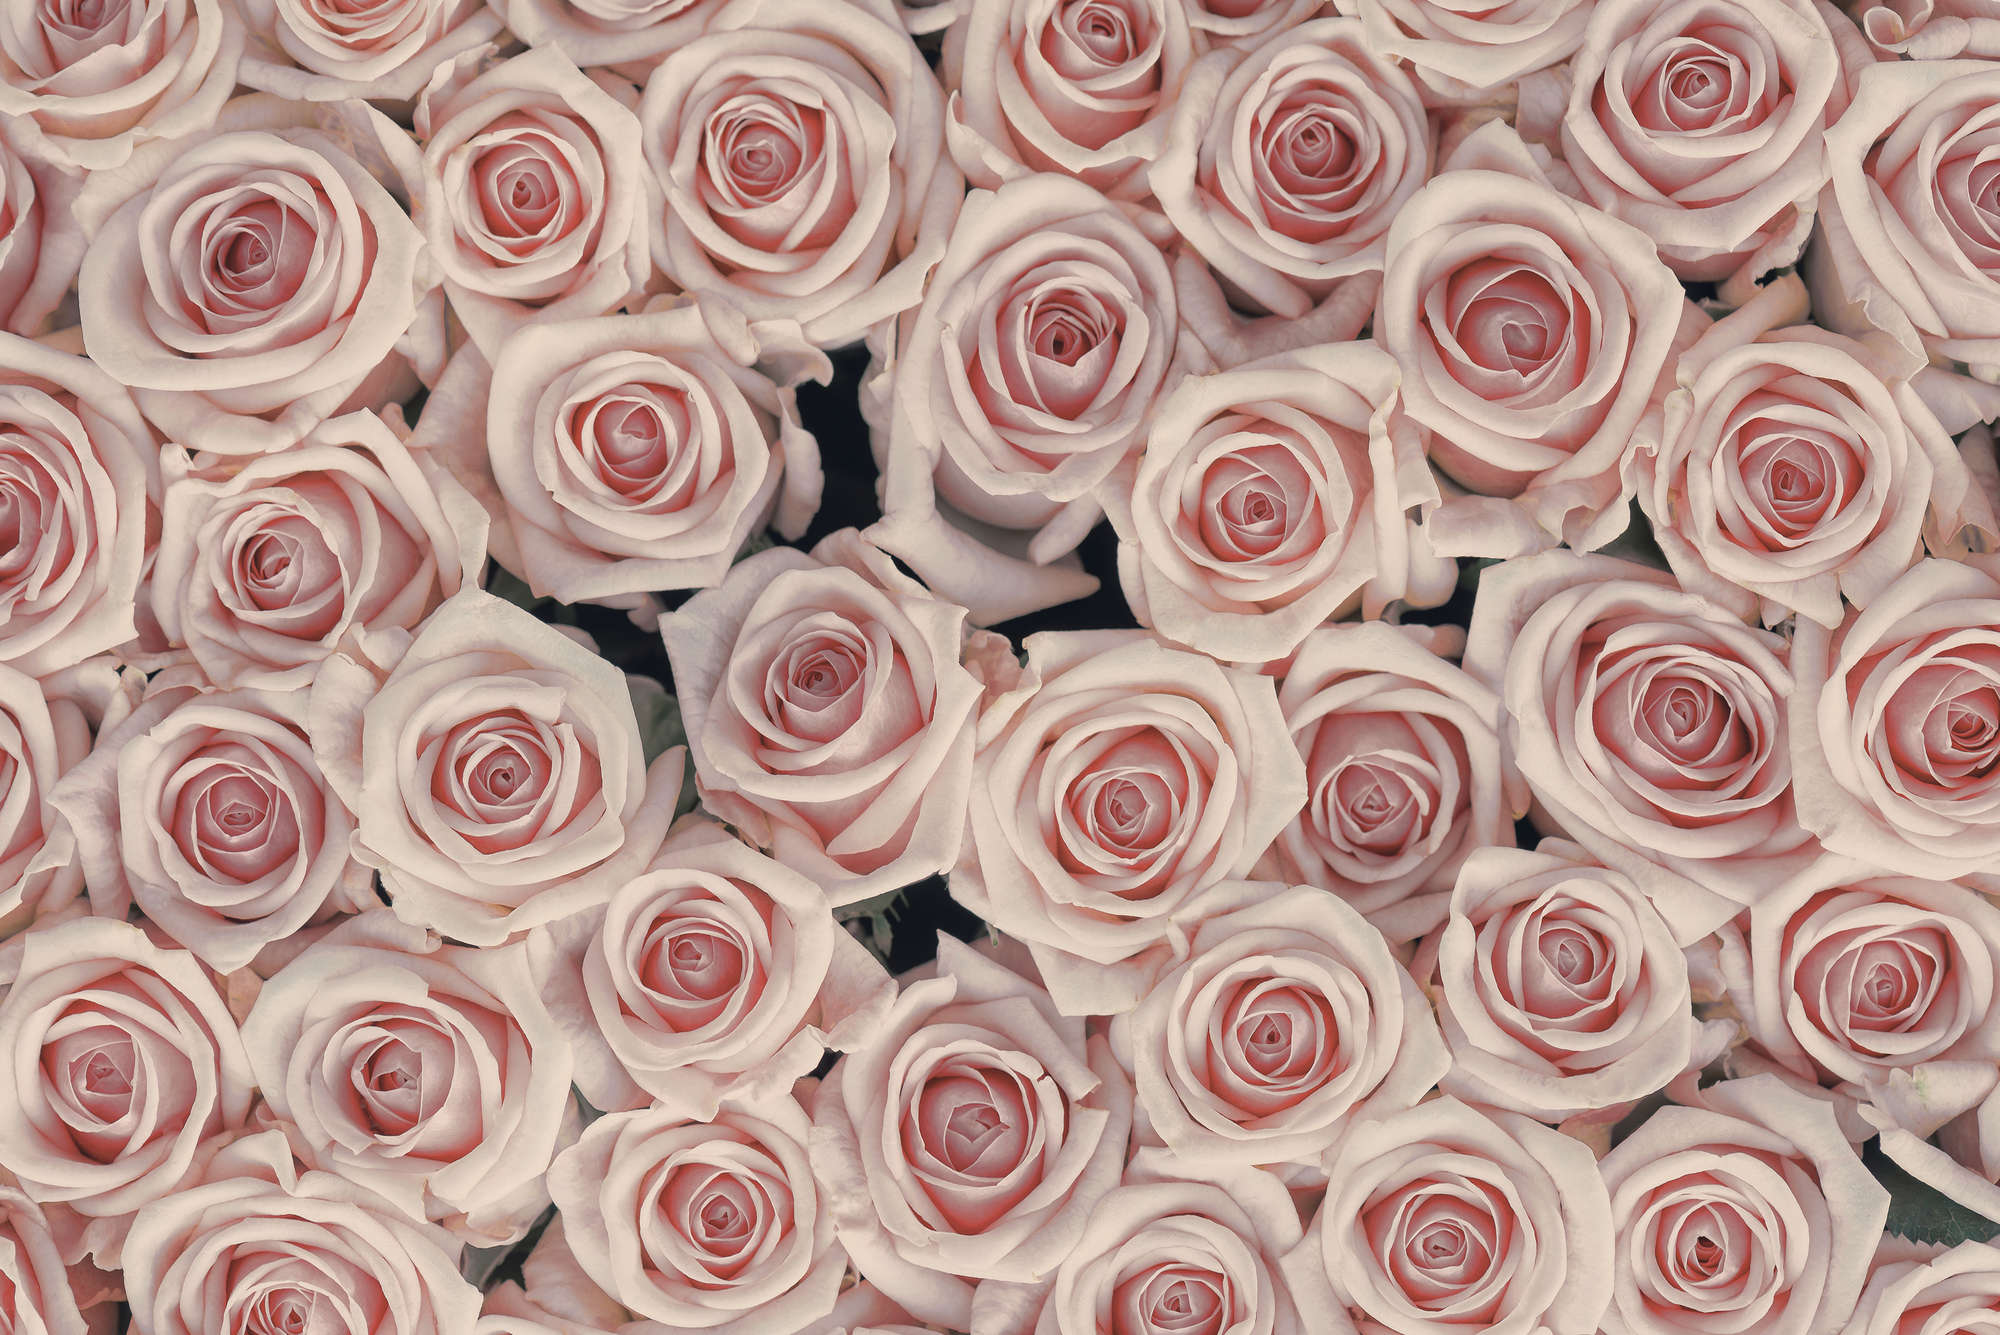             Papel pintado de plantas Rosas rosas y blancas sobre vellón liso perlado
        